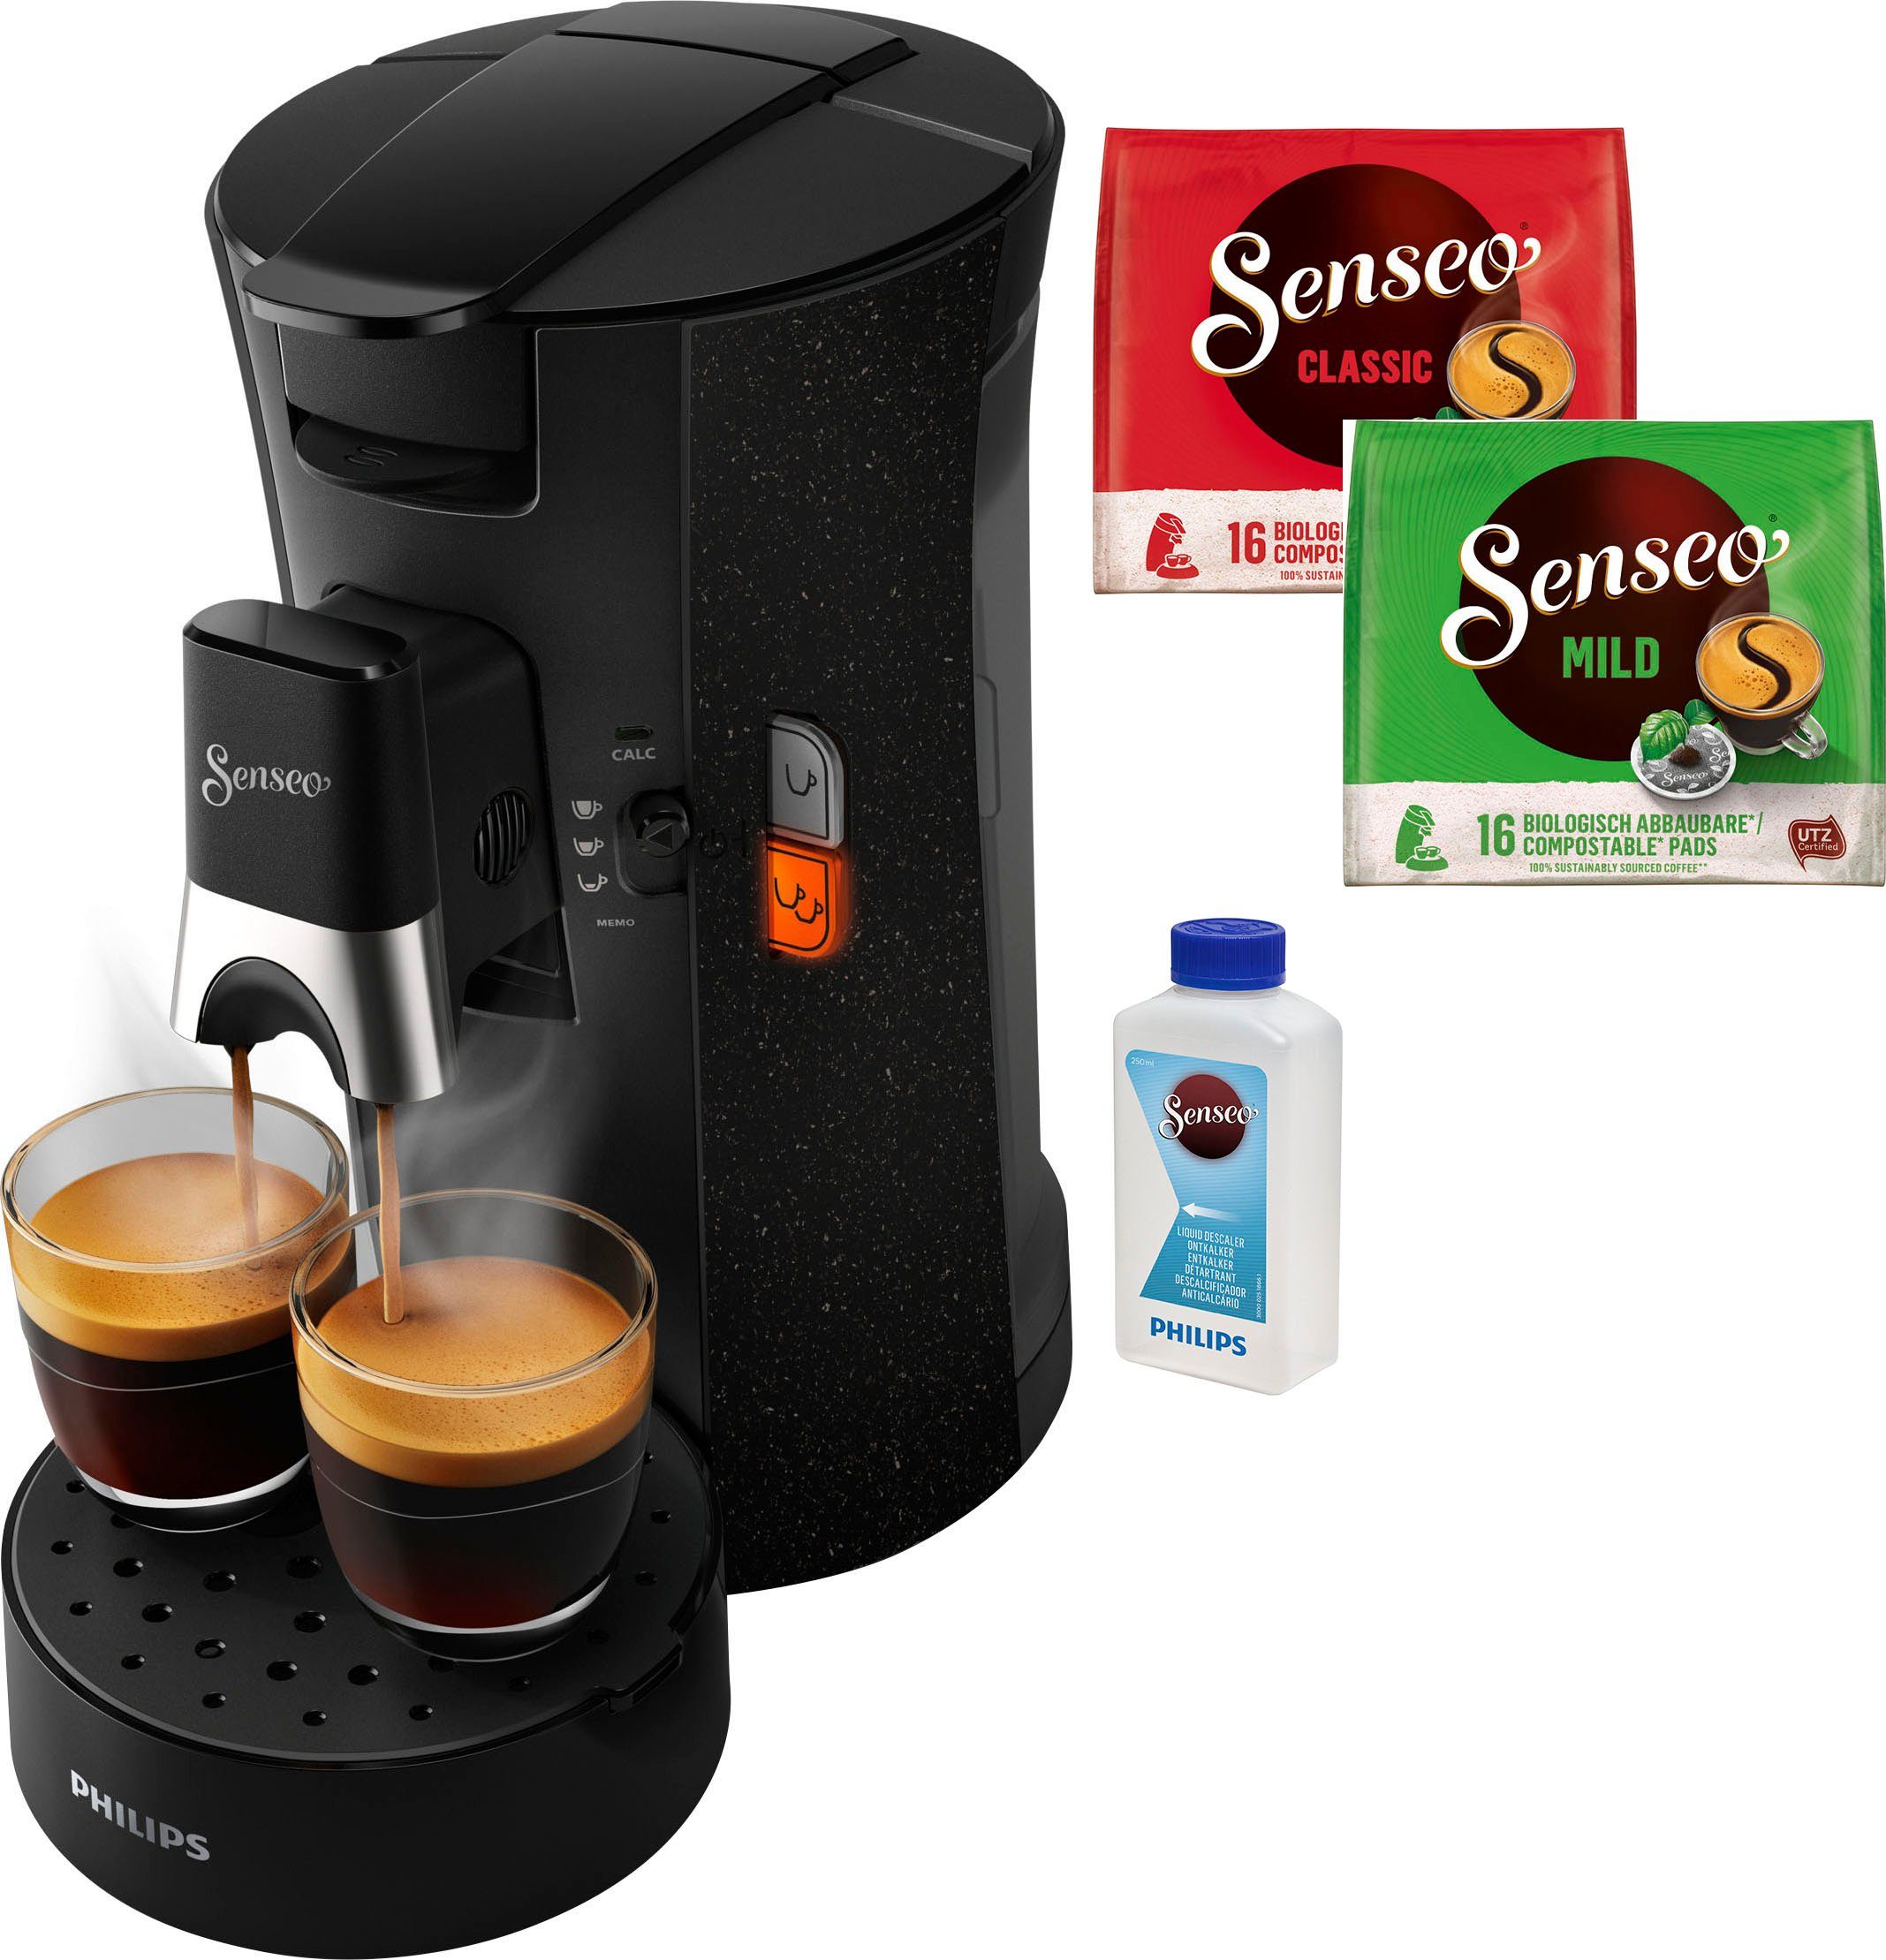 €14,-UVP) Gratis-Zugaben Memo-Funktion, aus Philips recyceltem Plastik, Kaffeepadmaschine (Wert CSA240/20, 37% ECO +3 Select Senseo Kaffeespezialitäten,